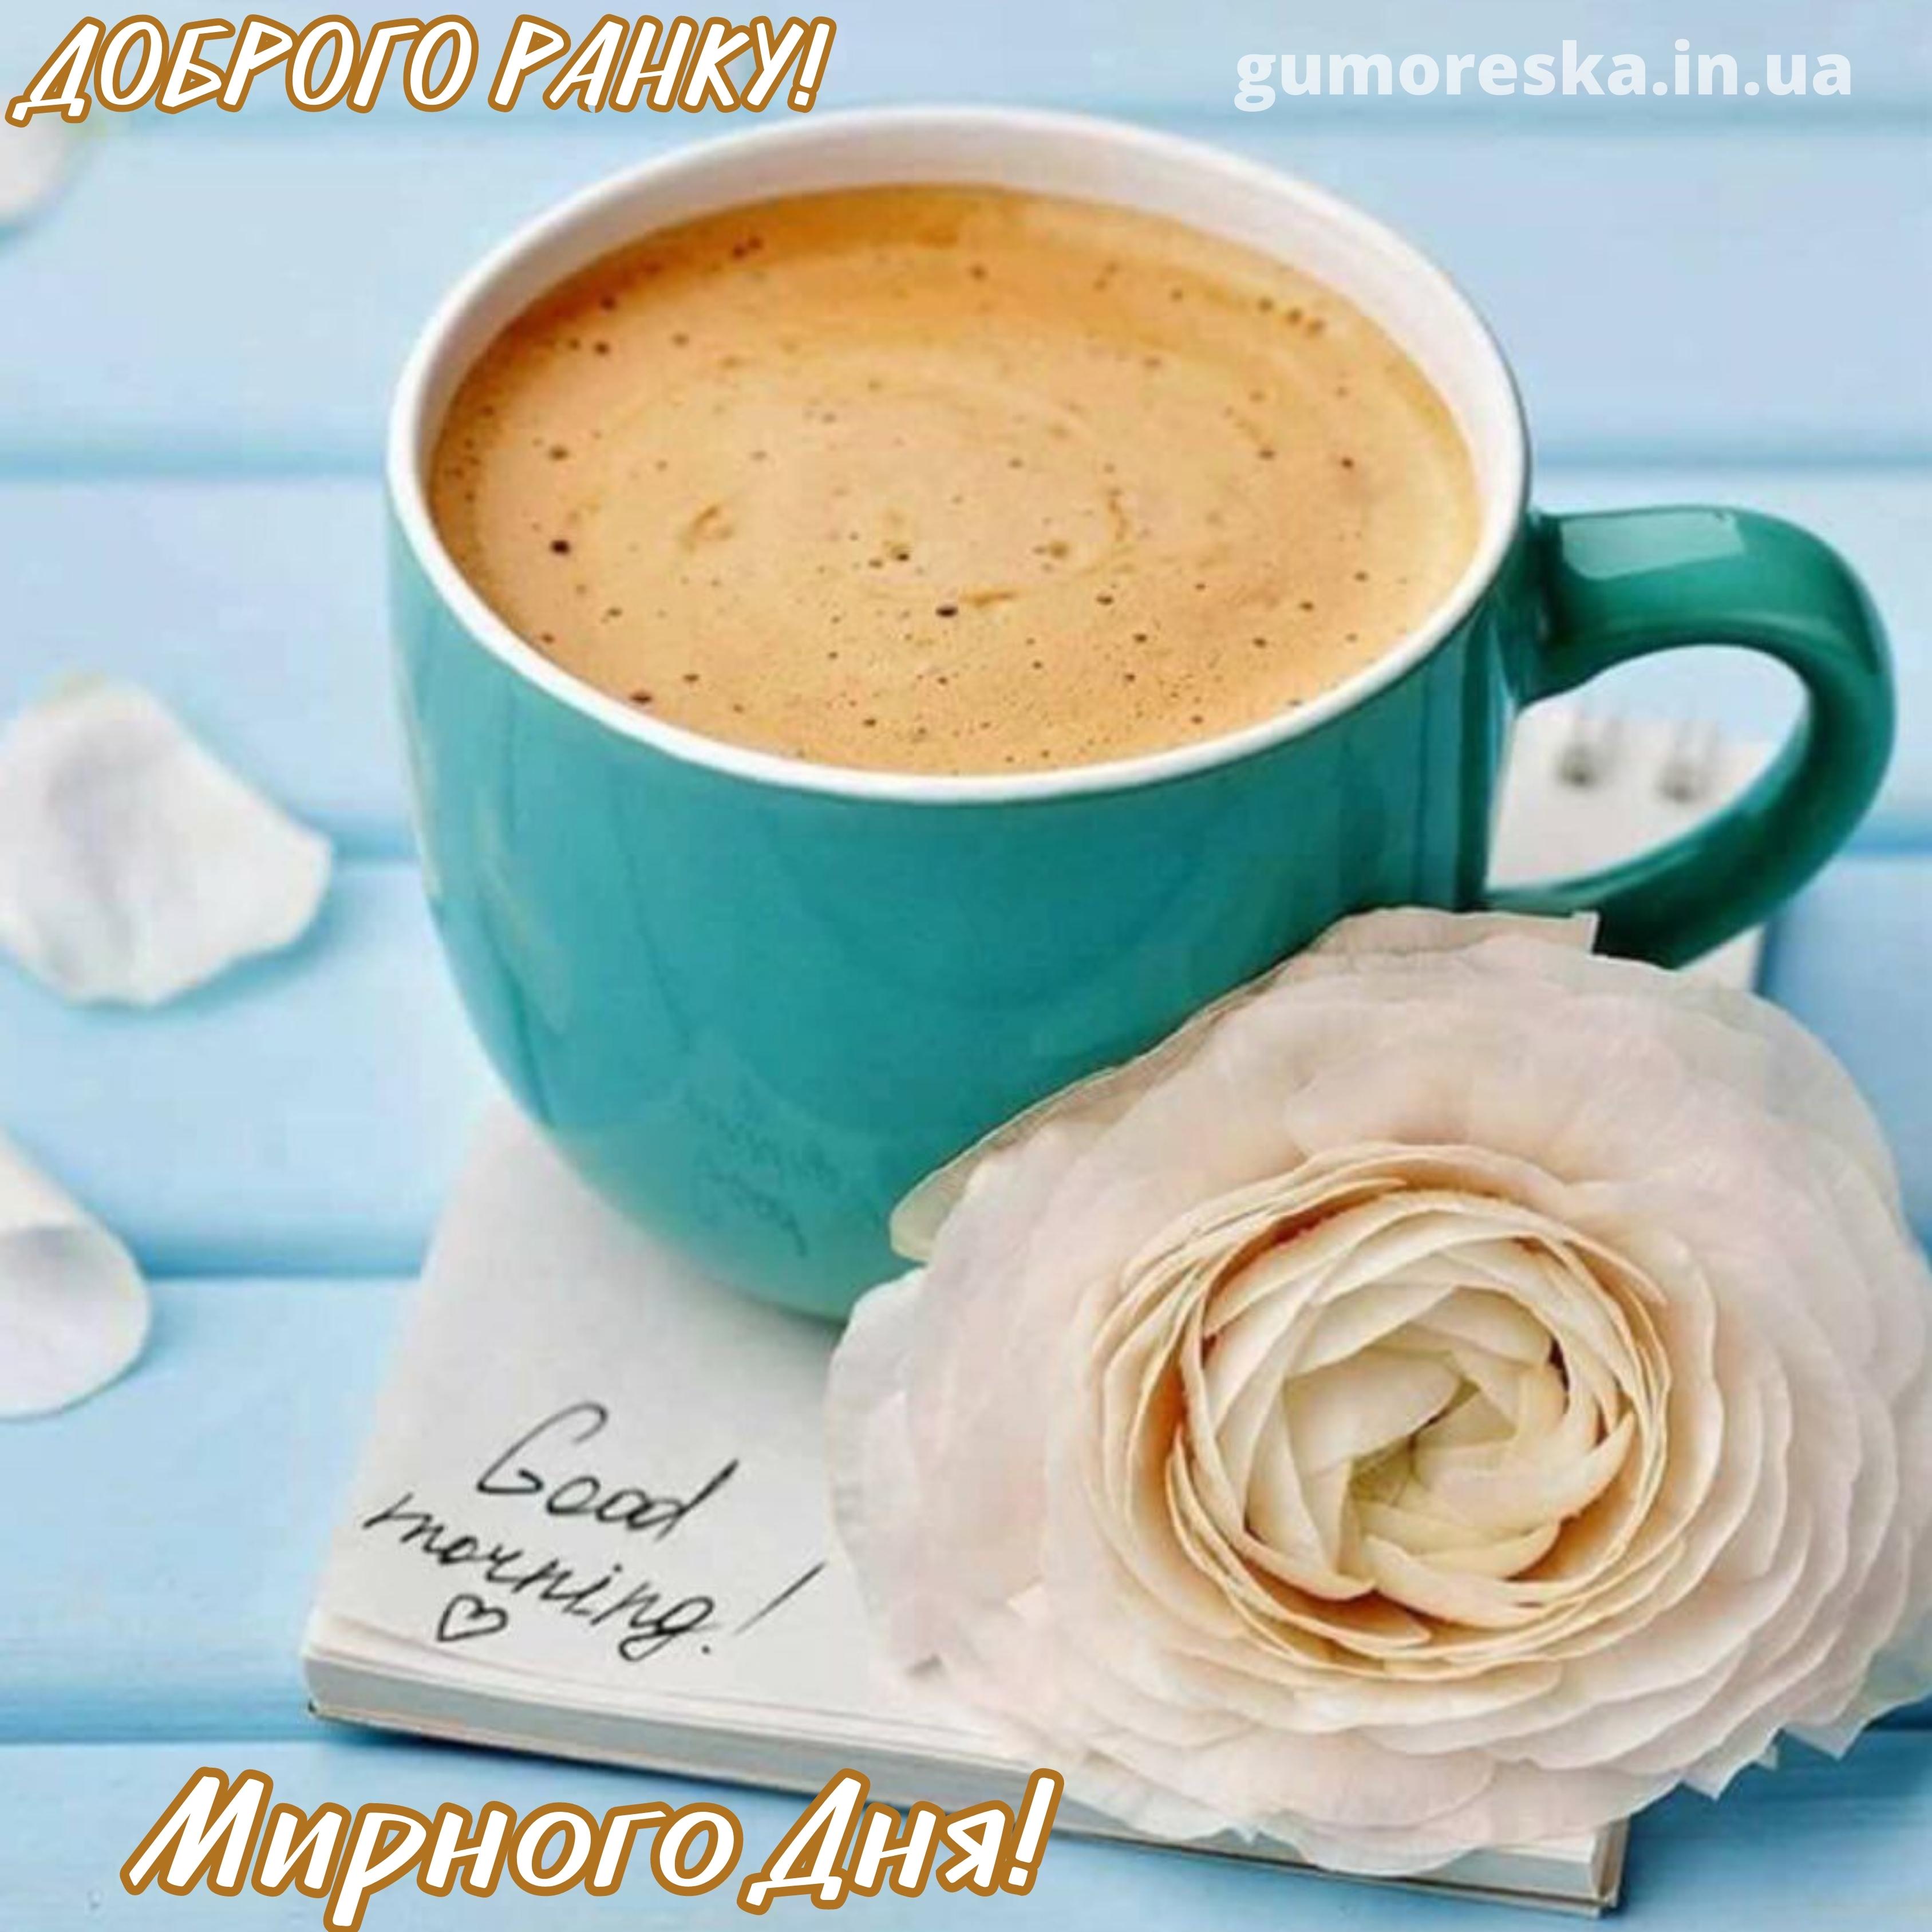 Доброго утра апреля стильные картинки. Стильные открытки с добрым утром. Красивая чашка кофе. С добрым утром кофе. Чашечка кофе с добрым утром.